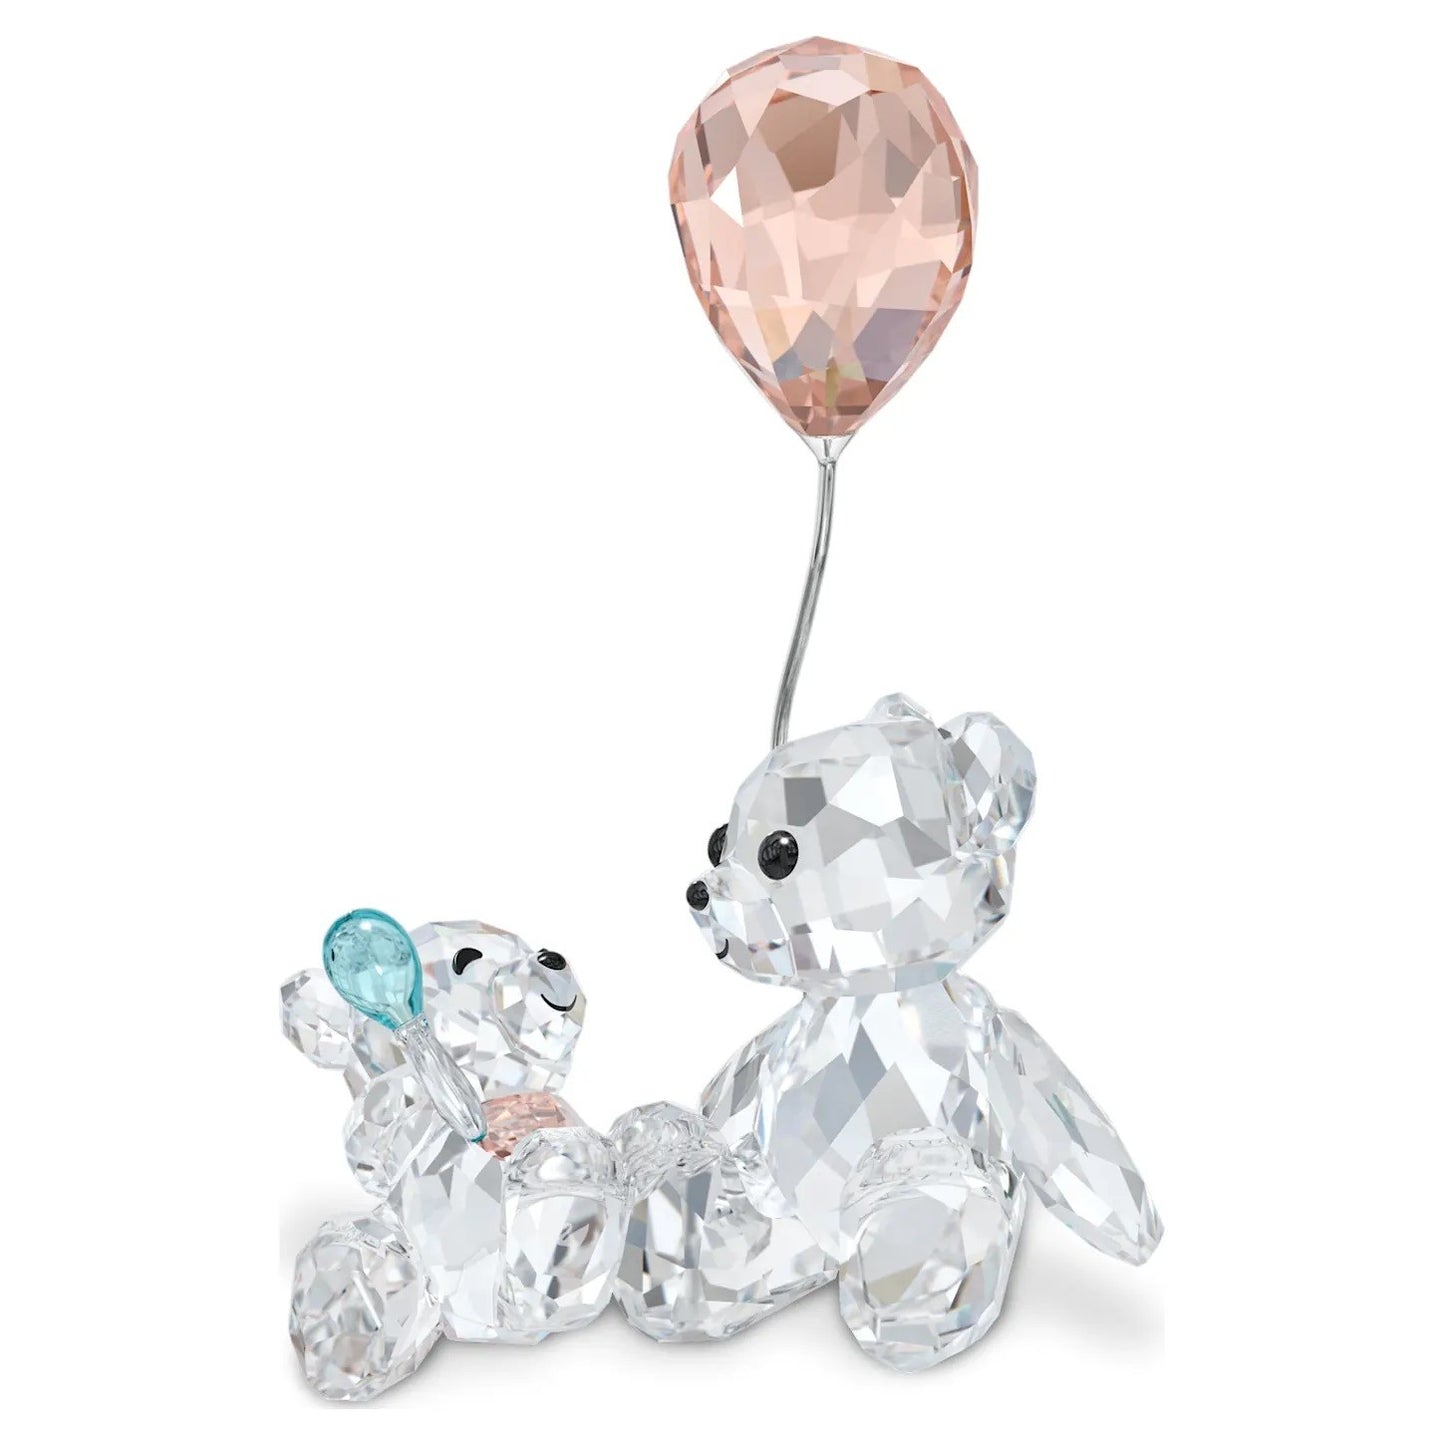 Bear Kris - Baby and Mum - Figurine - Swarovski